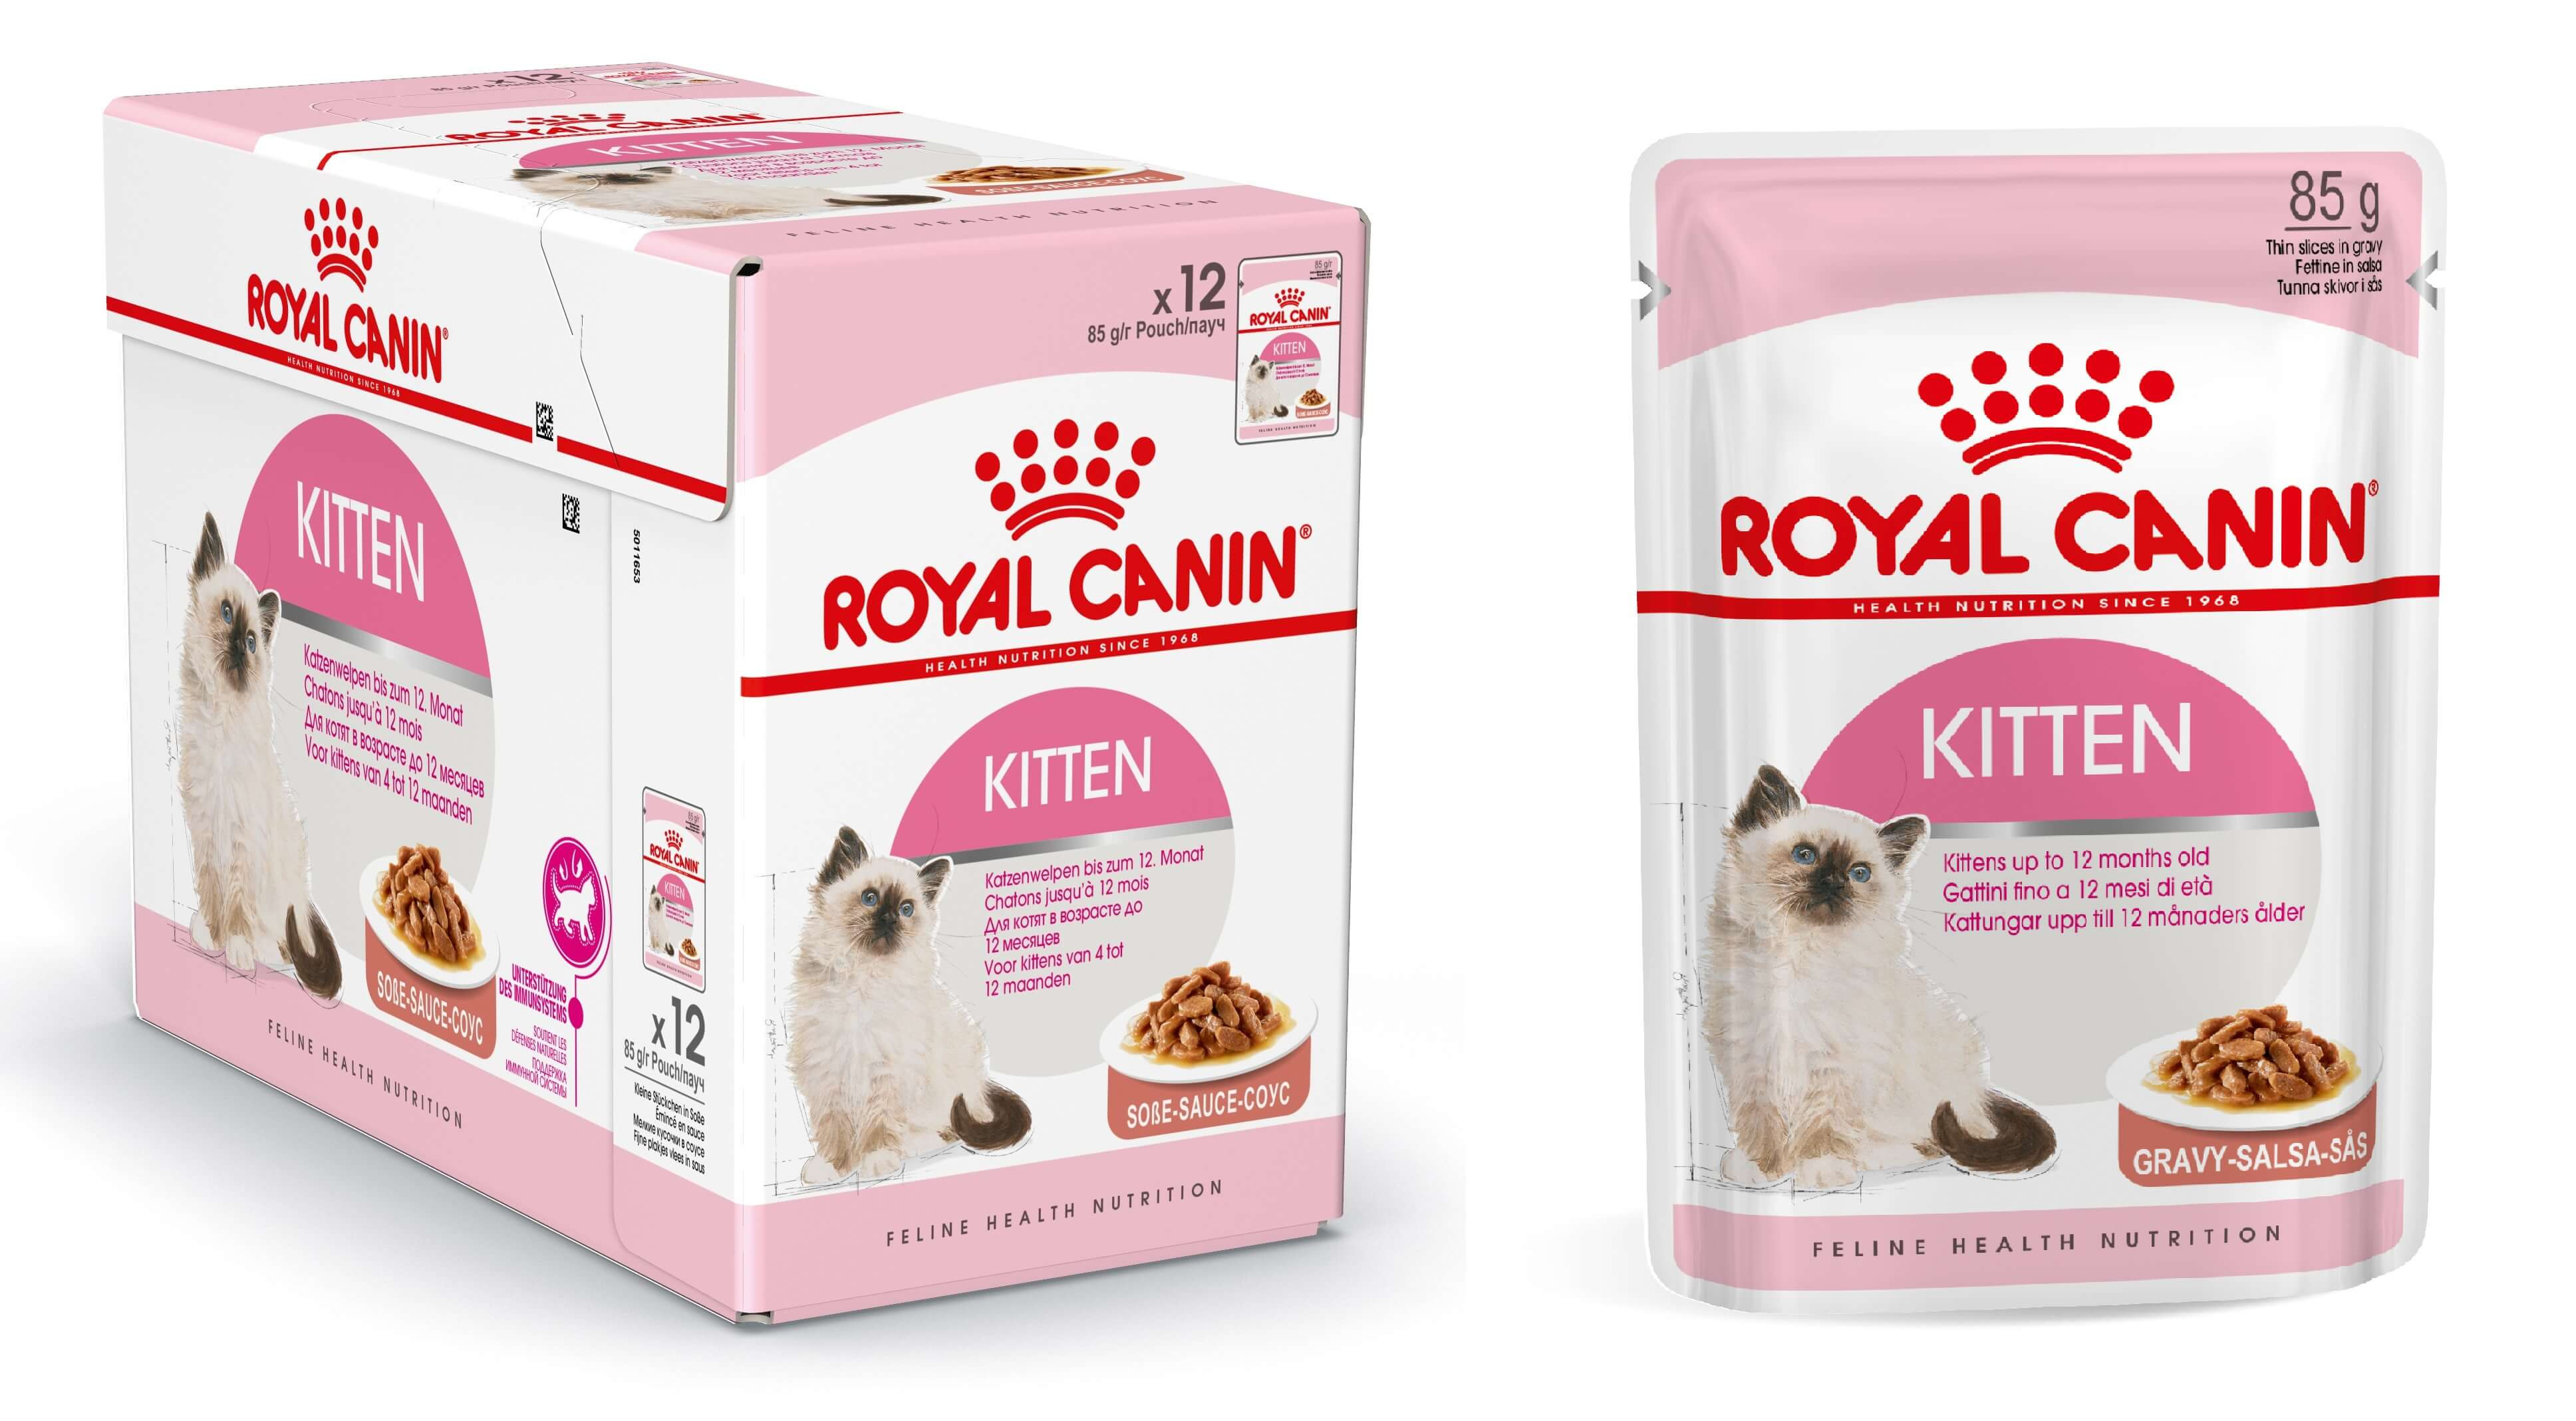 Royal Canin Kitten våtfoder i sås (85 g)